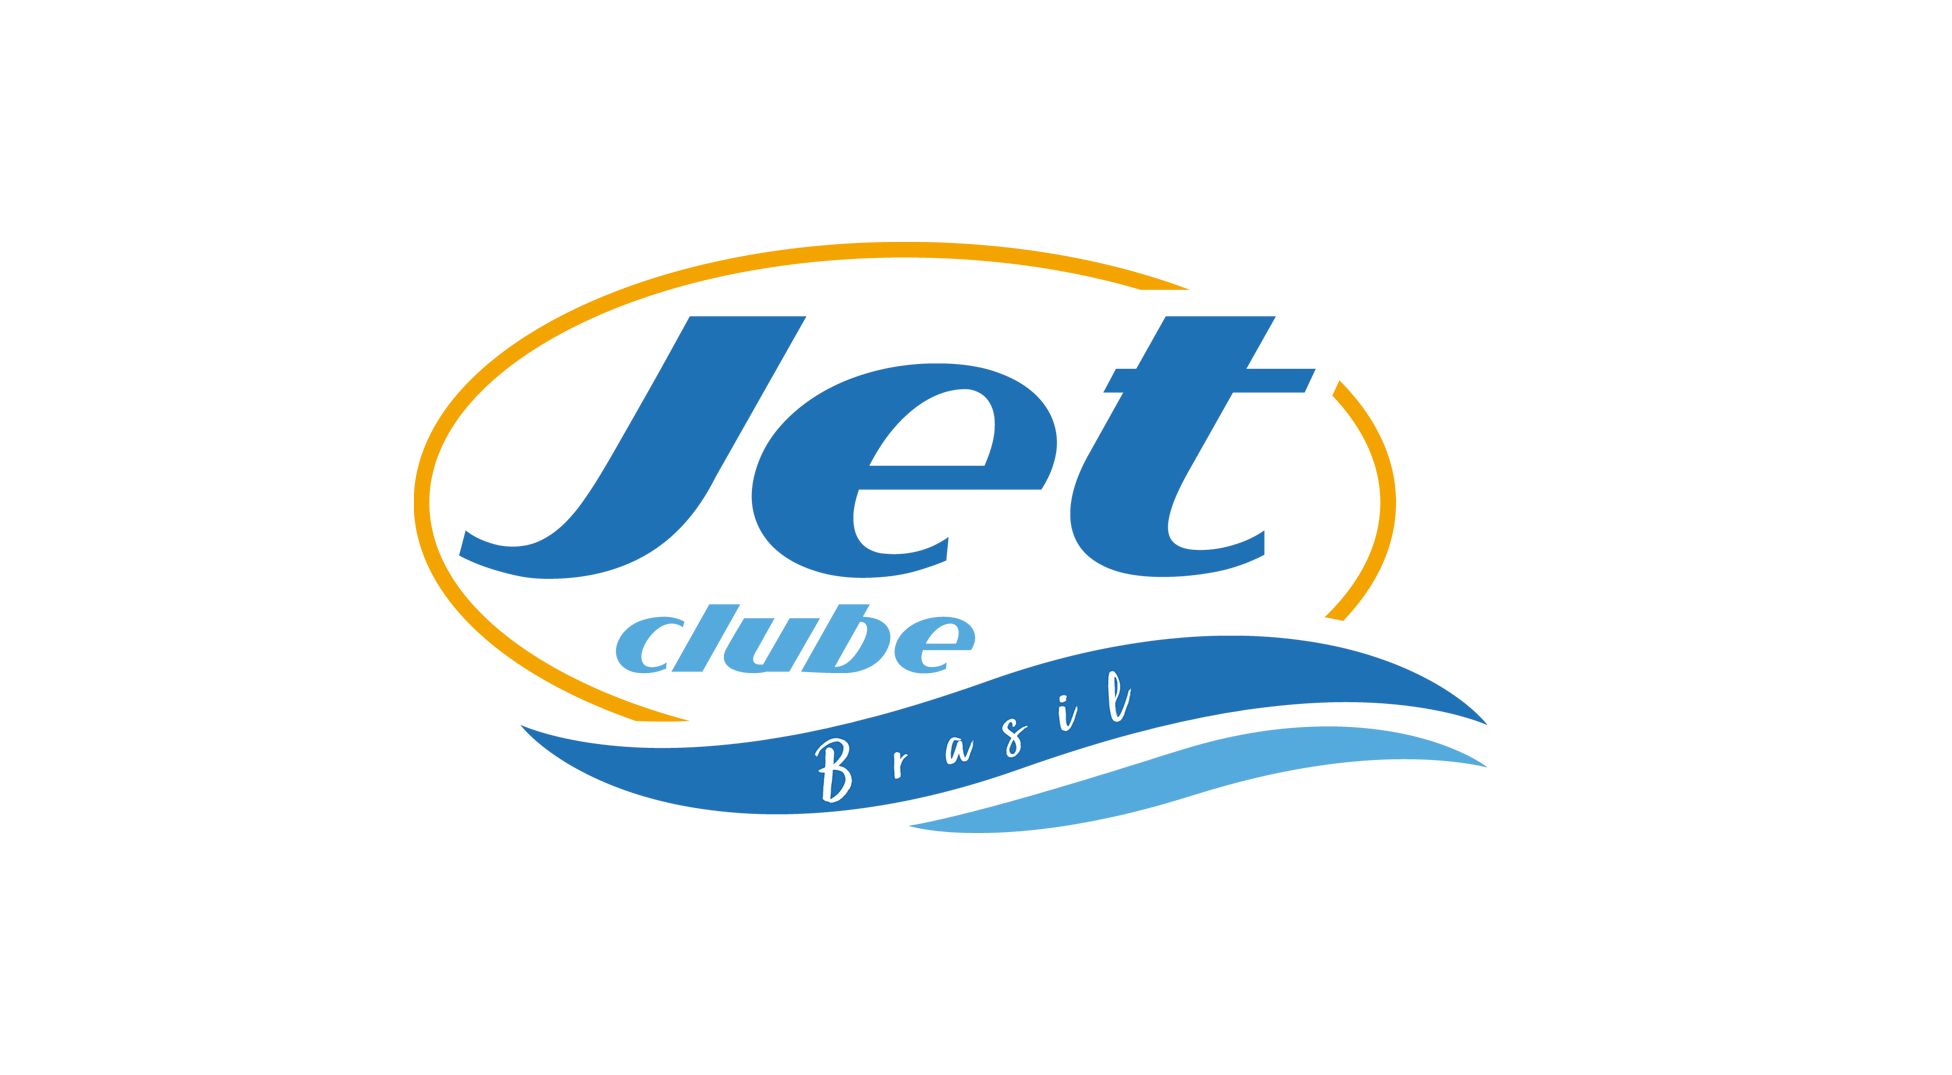 Jet Clube Brasil